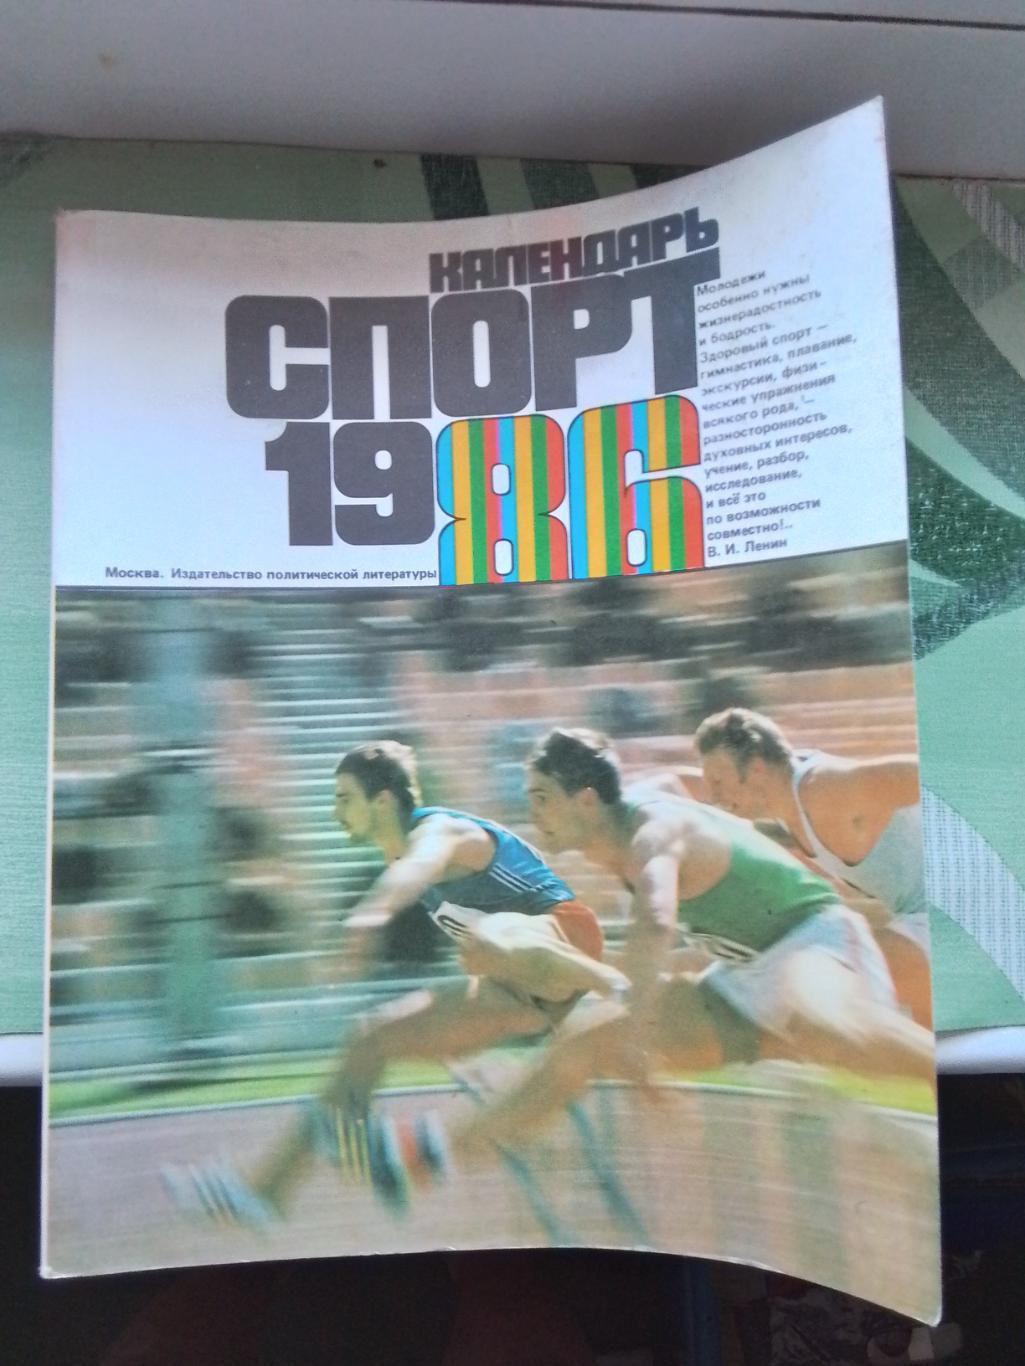 Ежегодник Календарь спорт 1986